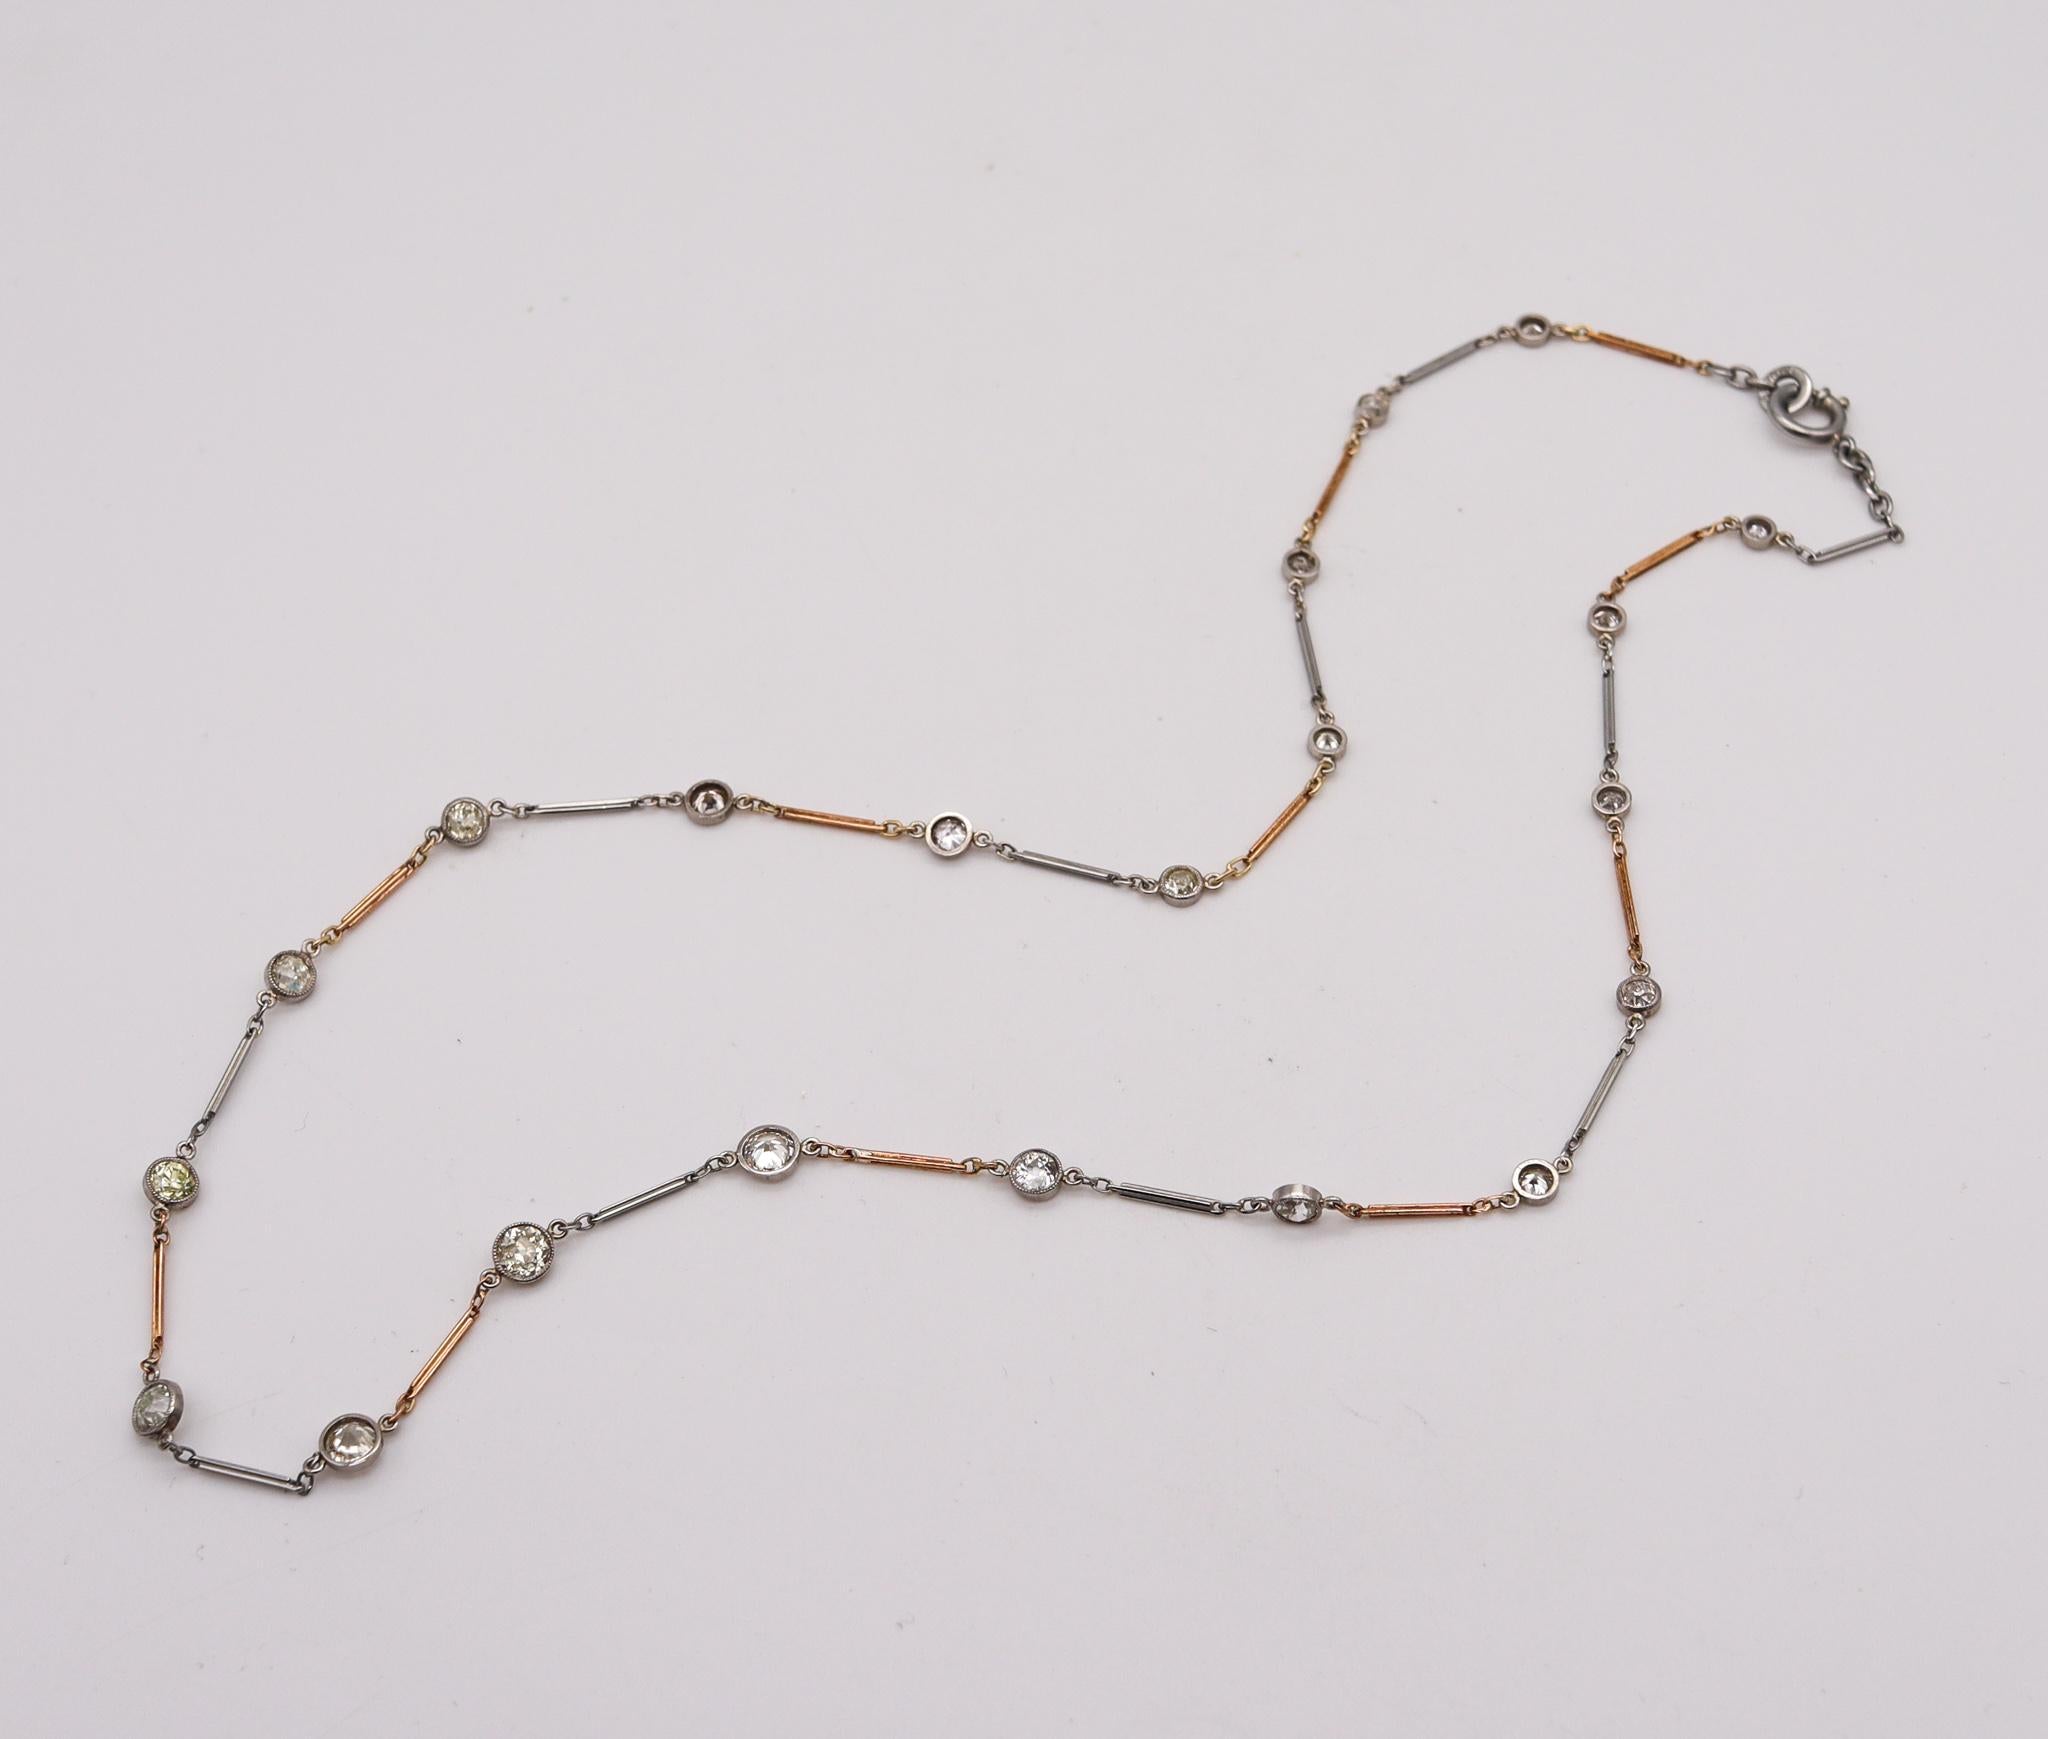 Ein Art-Déco-Halsband mit Diamanten, entworfen von Emrich & Schorsch Co.

Wunderschönes und seltenes Schmuckstück, hergestellt in New York City von der Schmuckfirma  Emrich & Schorsch, in den 1920er Jahren. Dieses außergewöhnliche Stück wurde in der